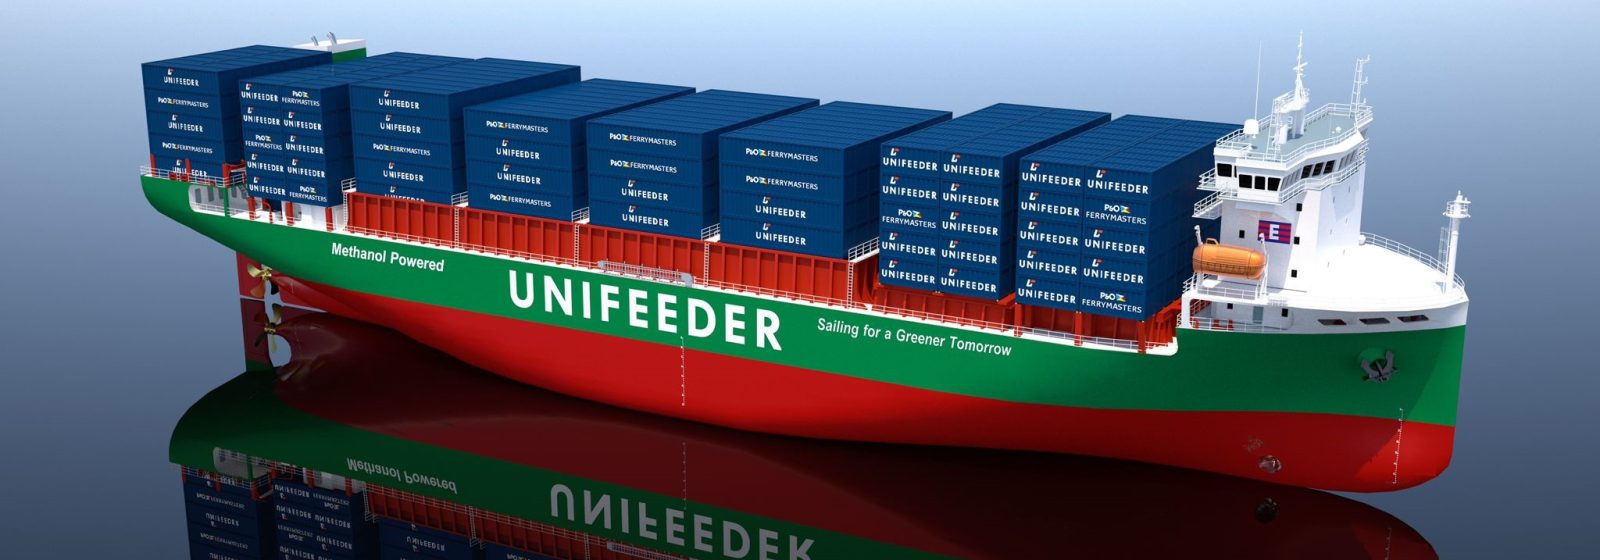 Artist impression van Unifeeders nieuwe schepen van 1.250 teu op methanol